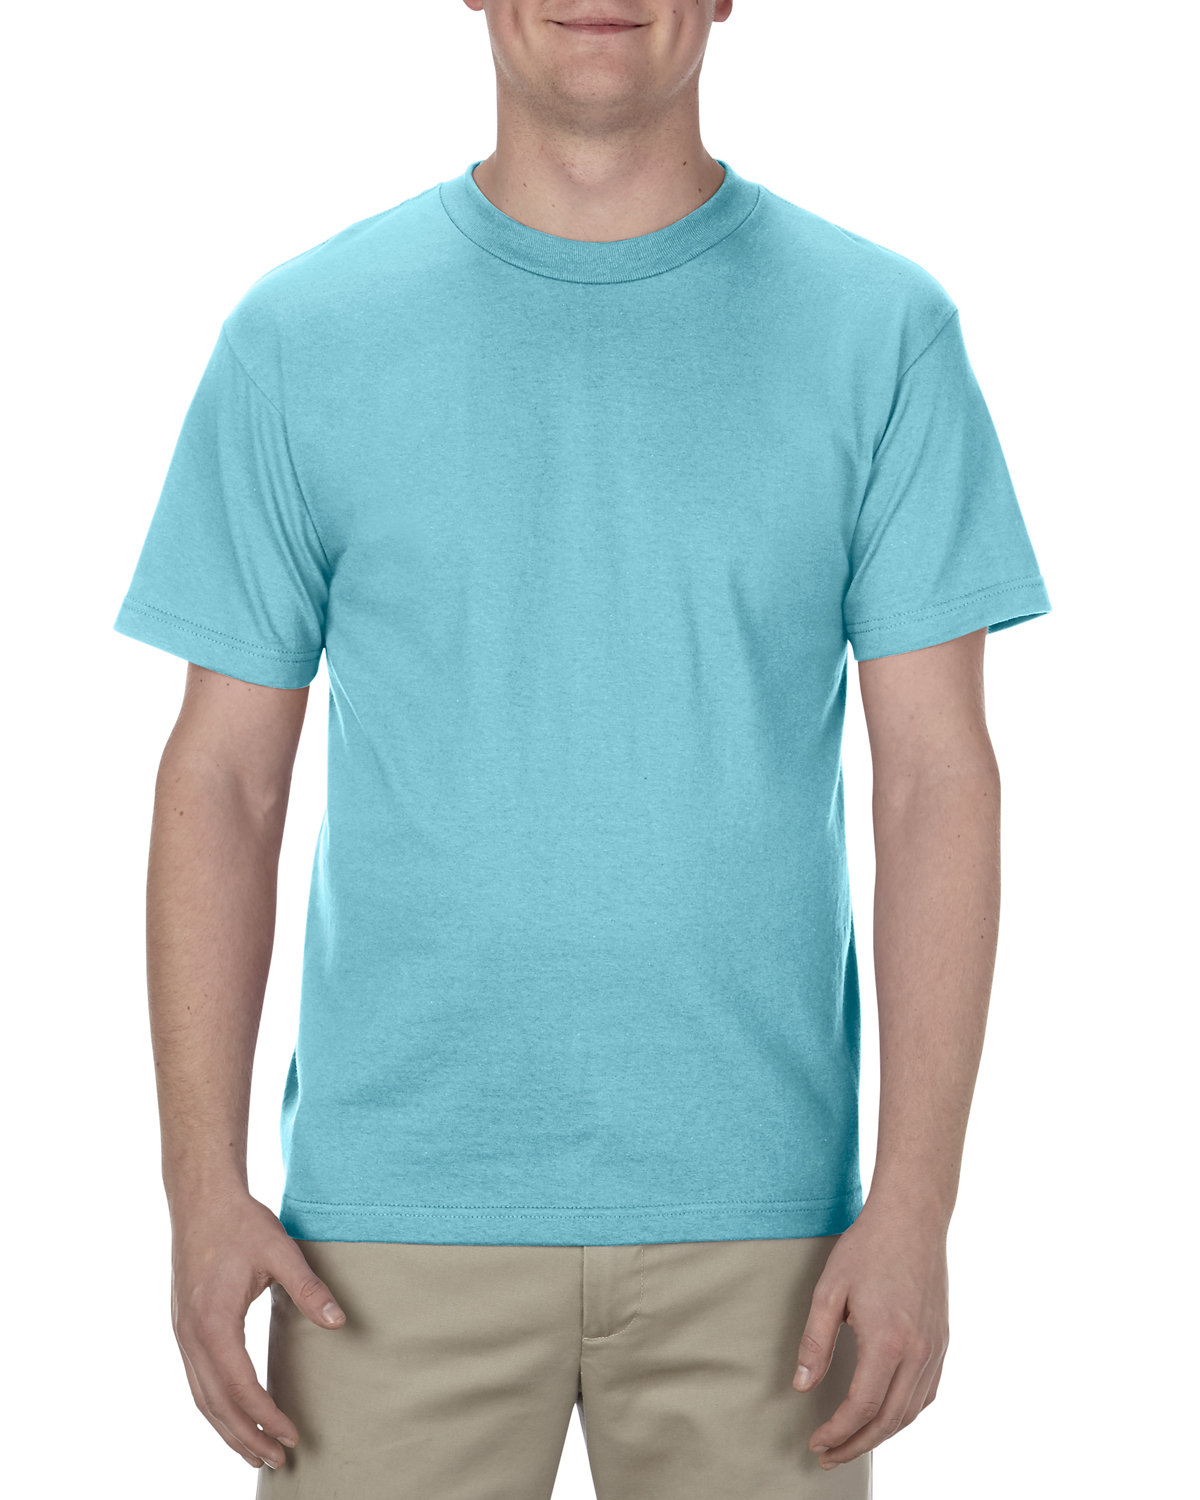 Alstyle Adult 6.0 oz., 100% Cotton T-Shirt PACIFIC BLUE 